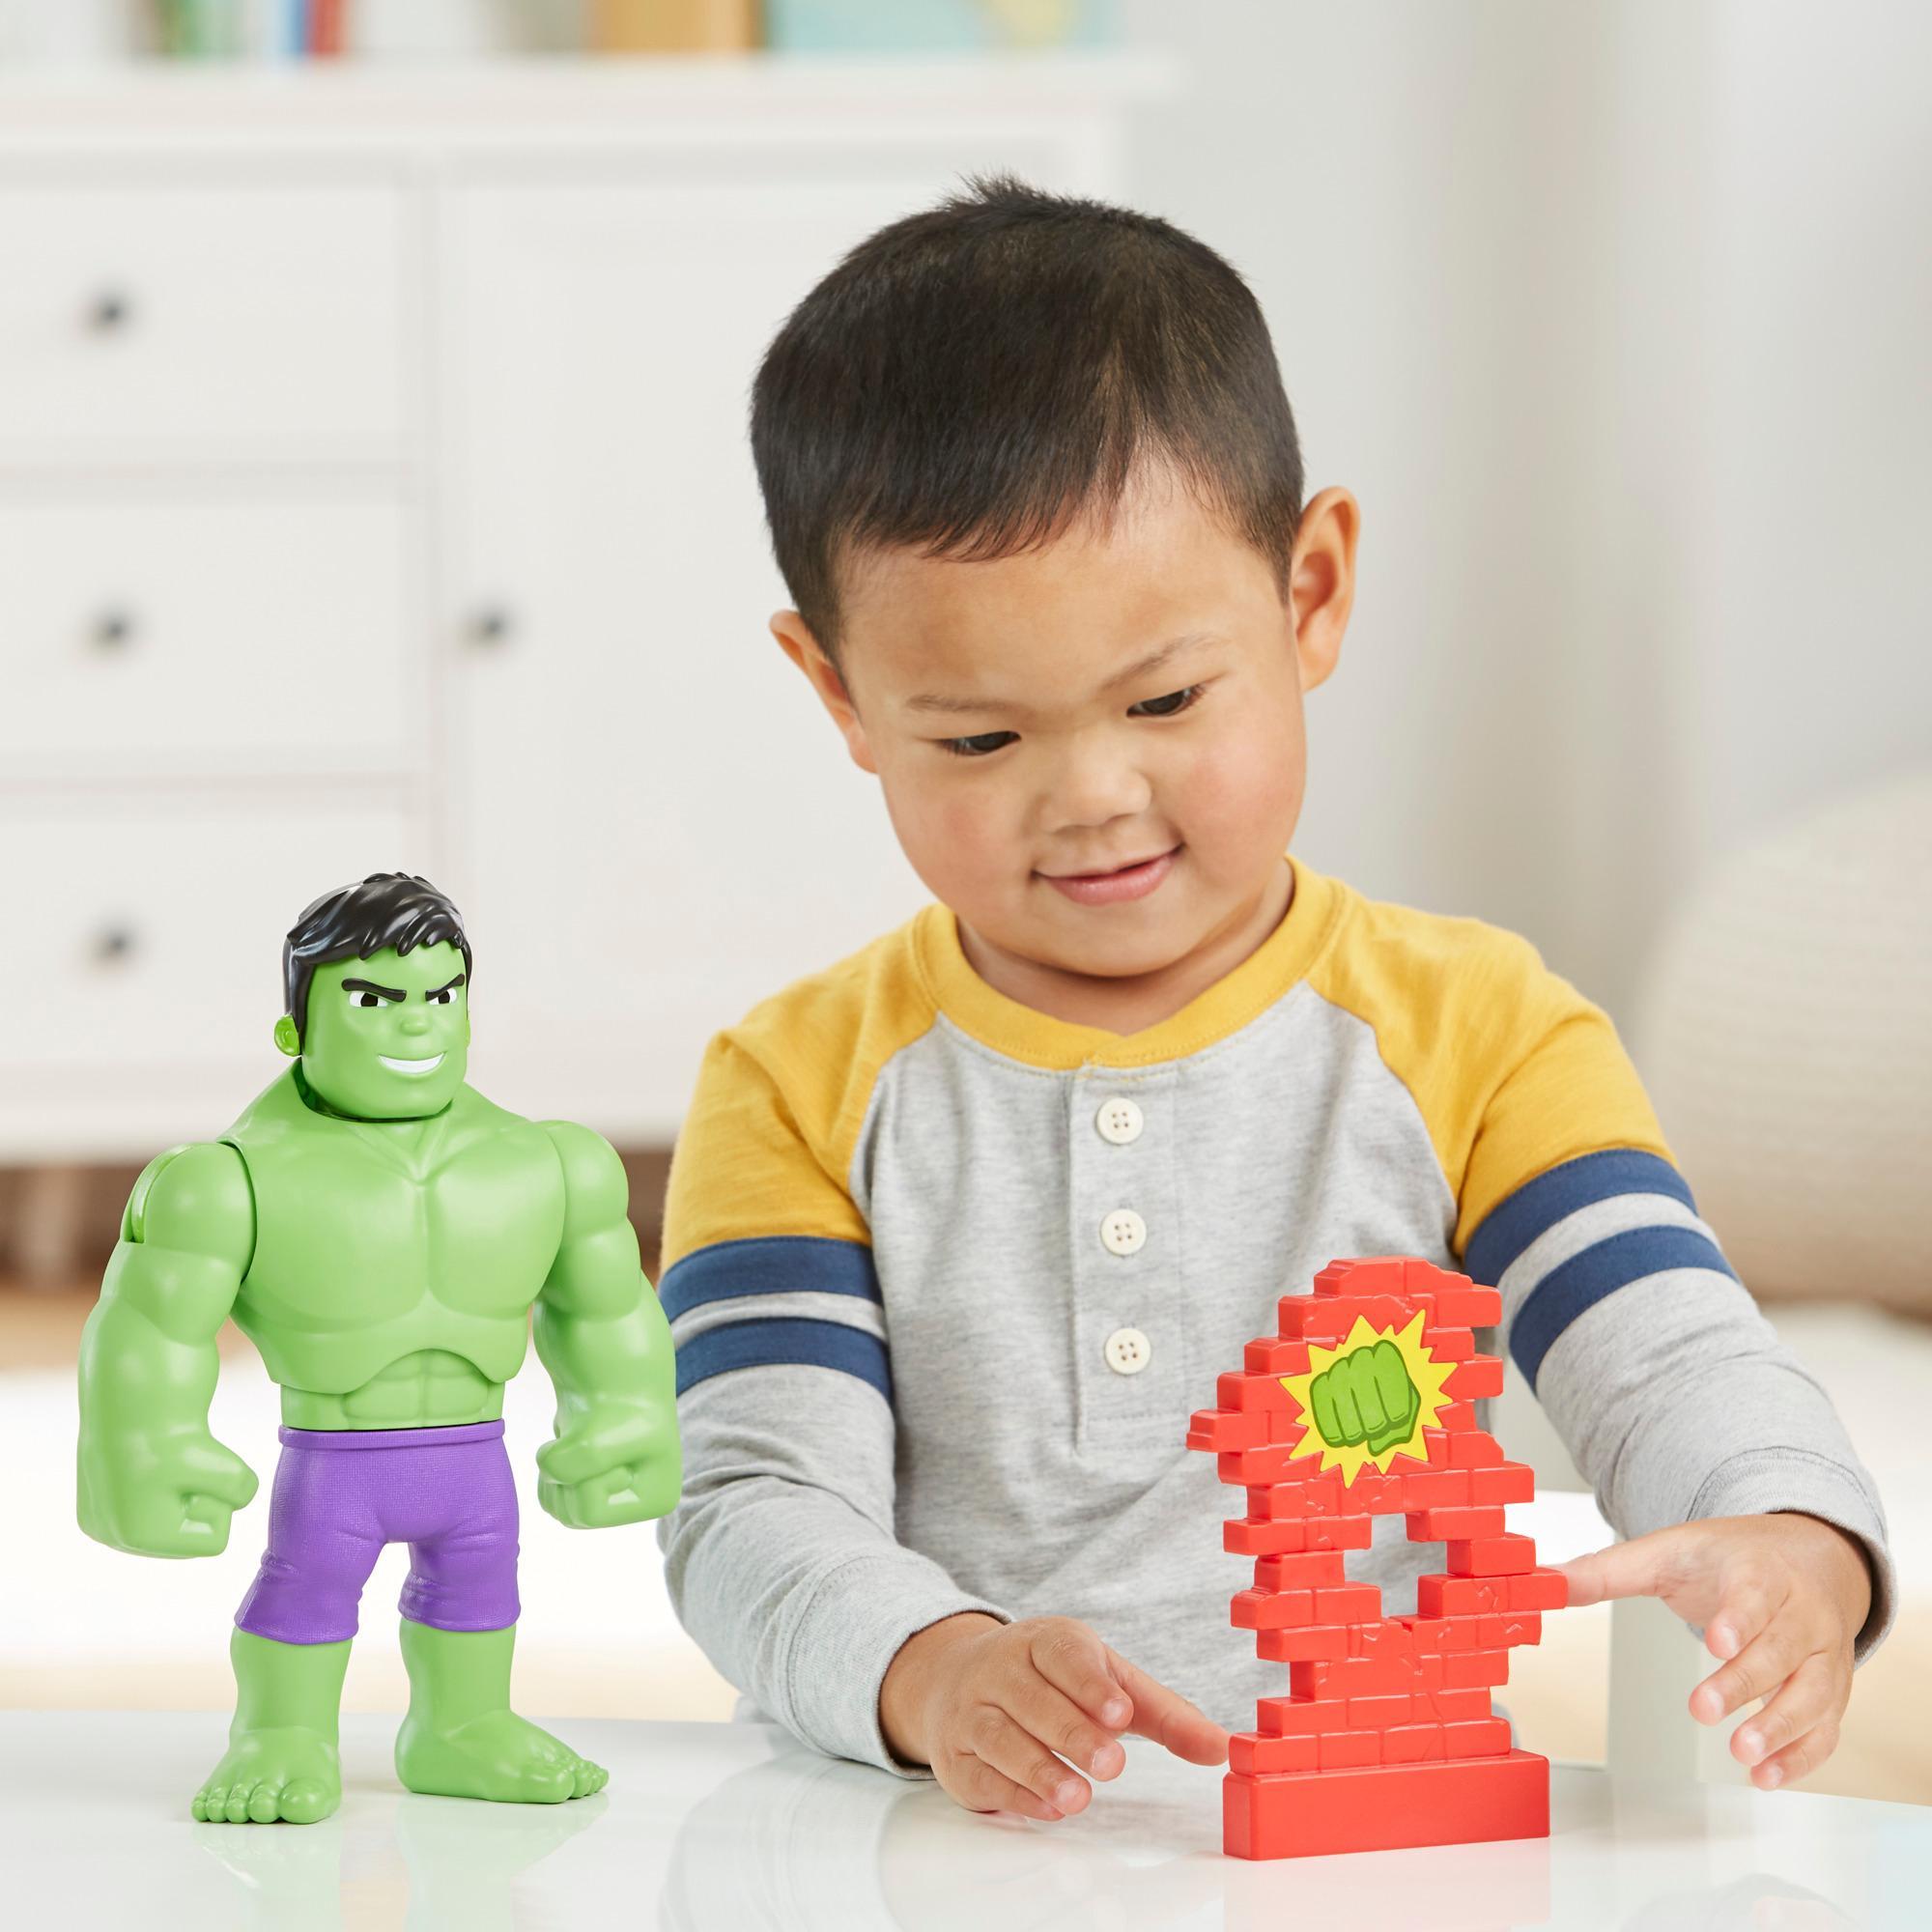 Spidey et ses Amis Extraordinaires, Hulk Casseur de mur, figurine de 25 cm à plusieurs visages, pour enfants dès 3 ans product thumbnail 1